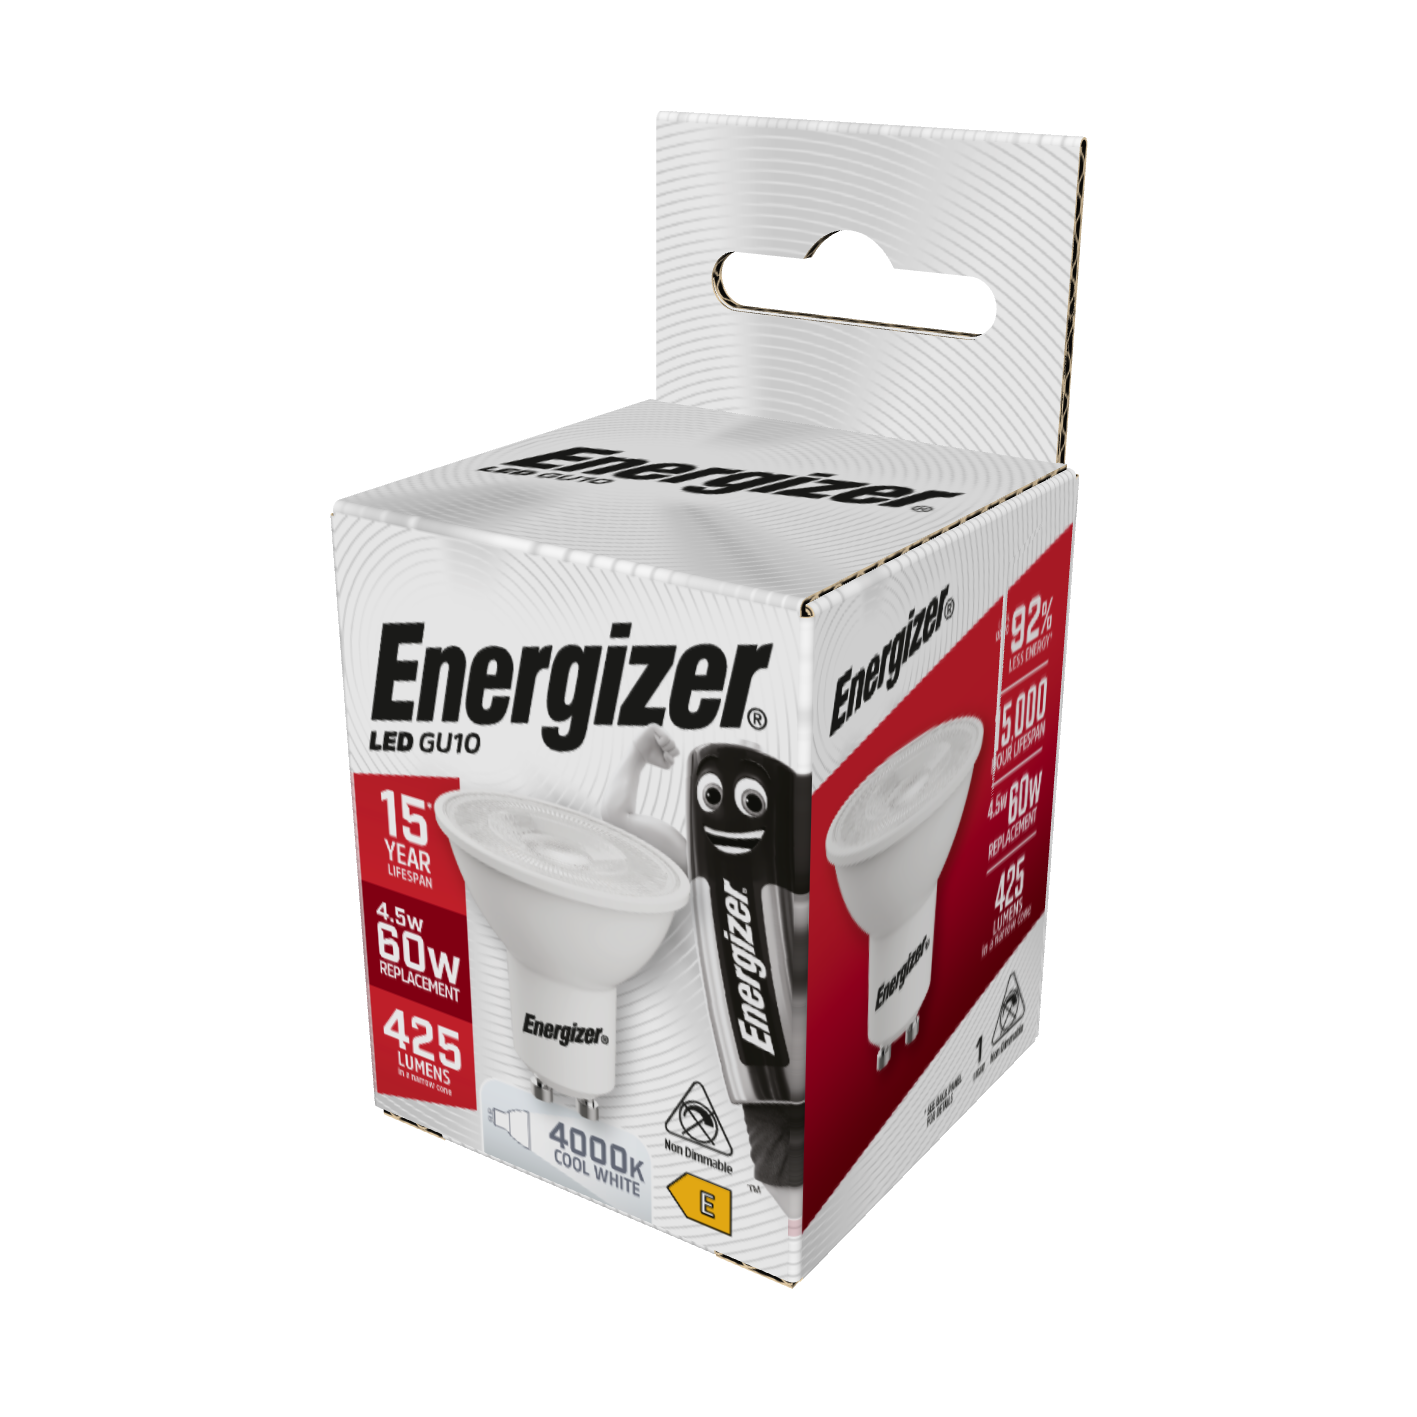 Energizer LED GU10 425lm 4.5W 4,000K (Cool White), Box of 1